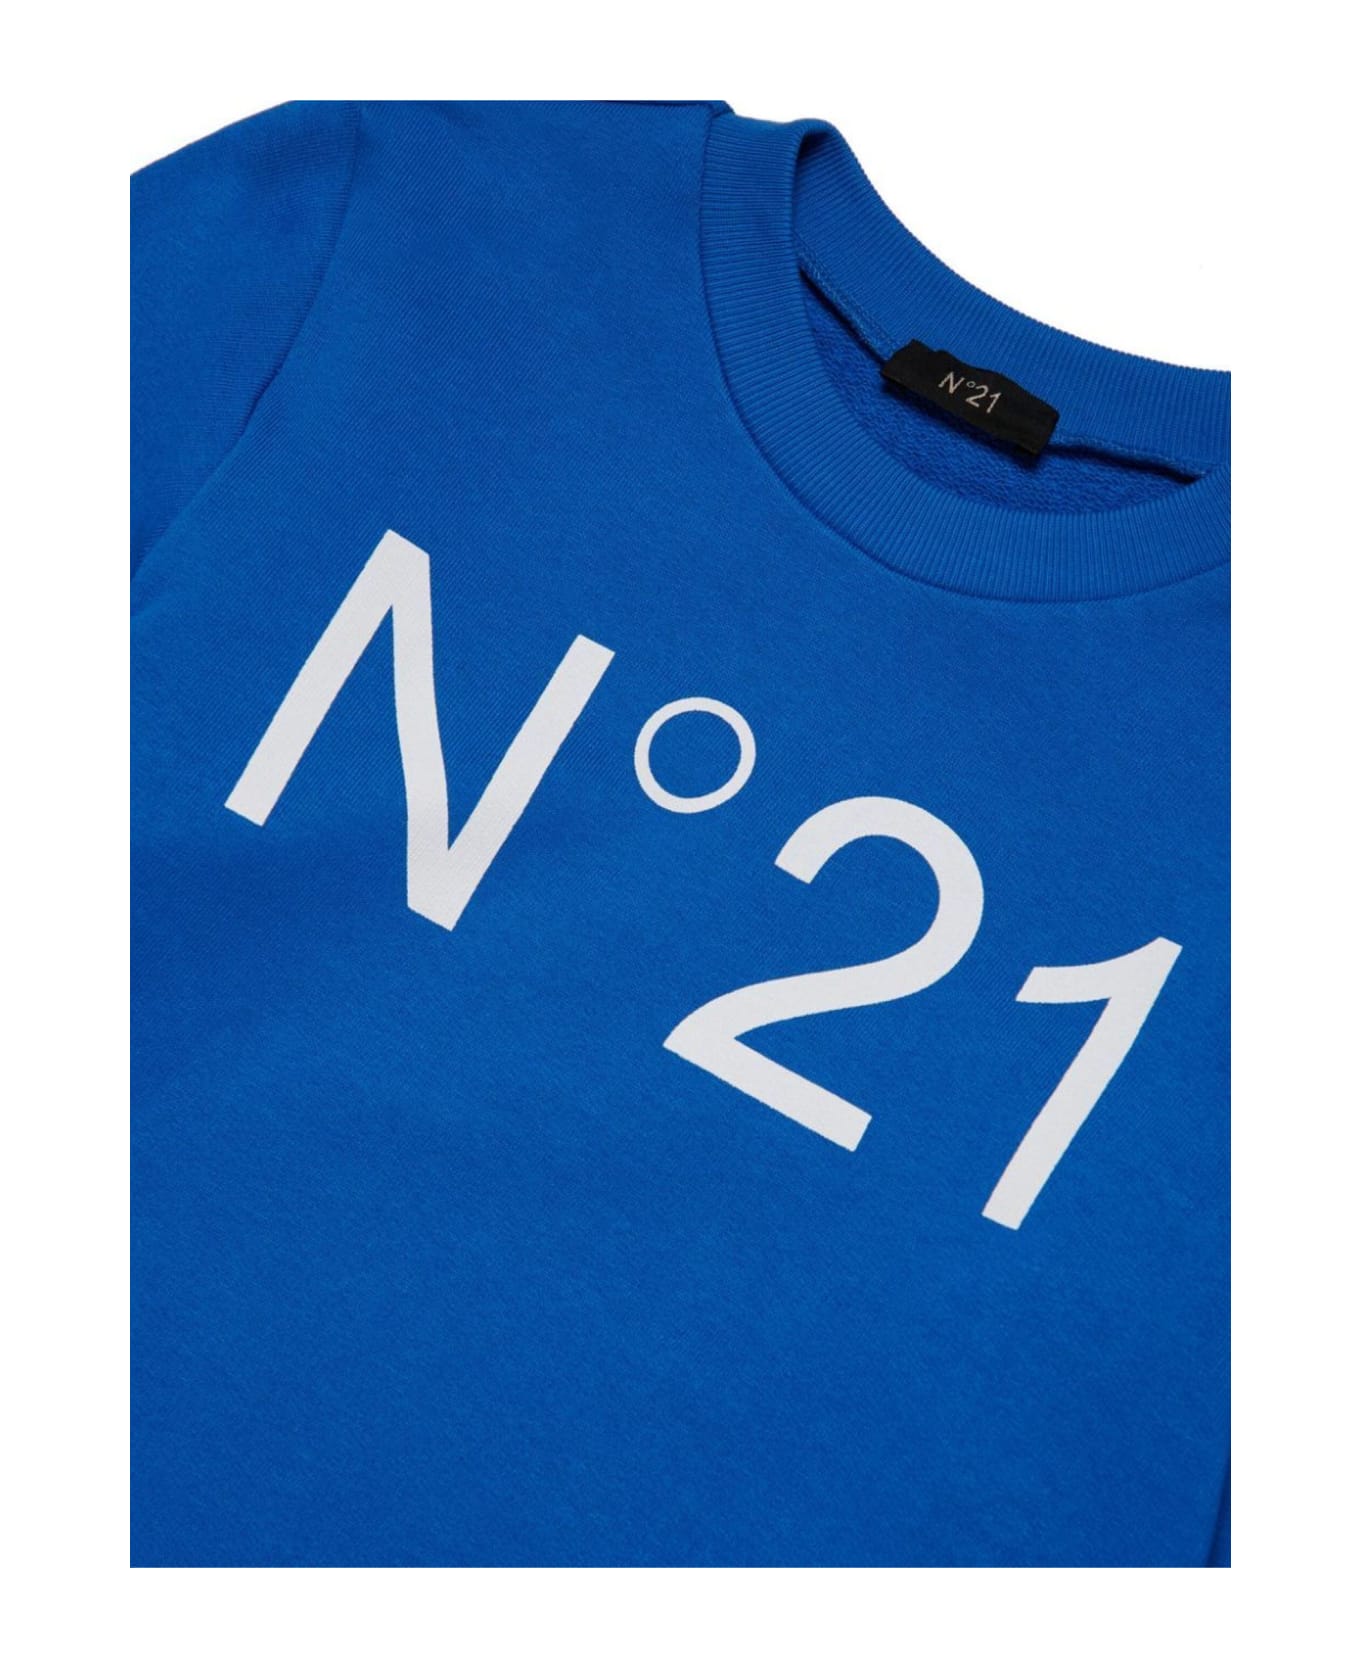 N.21 N°21 Sweaters Blue - Blue ニットウェア＆スウェットシャツ